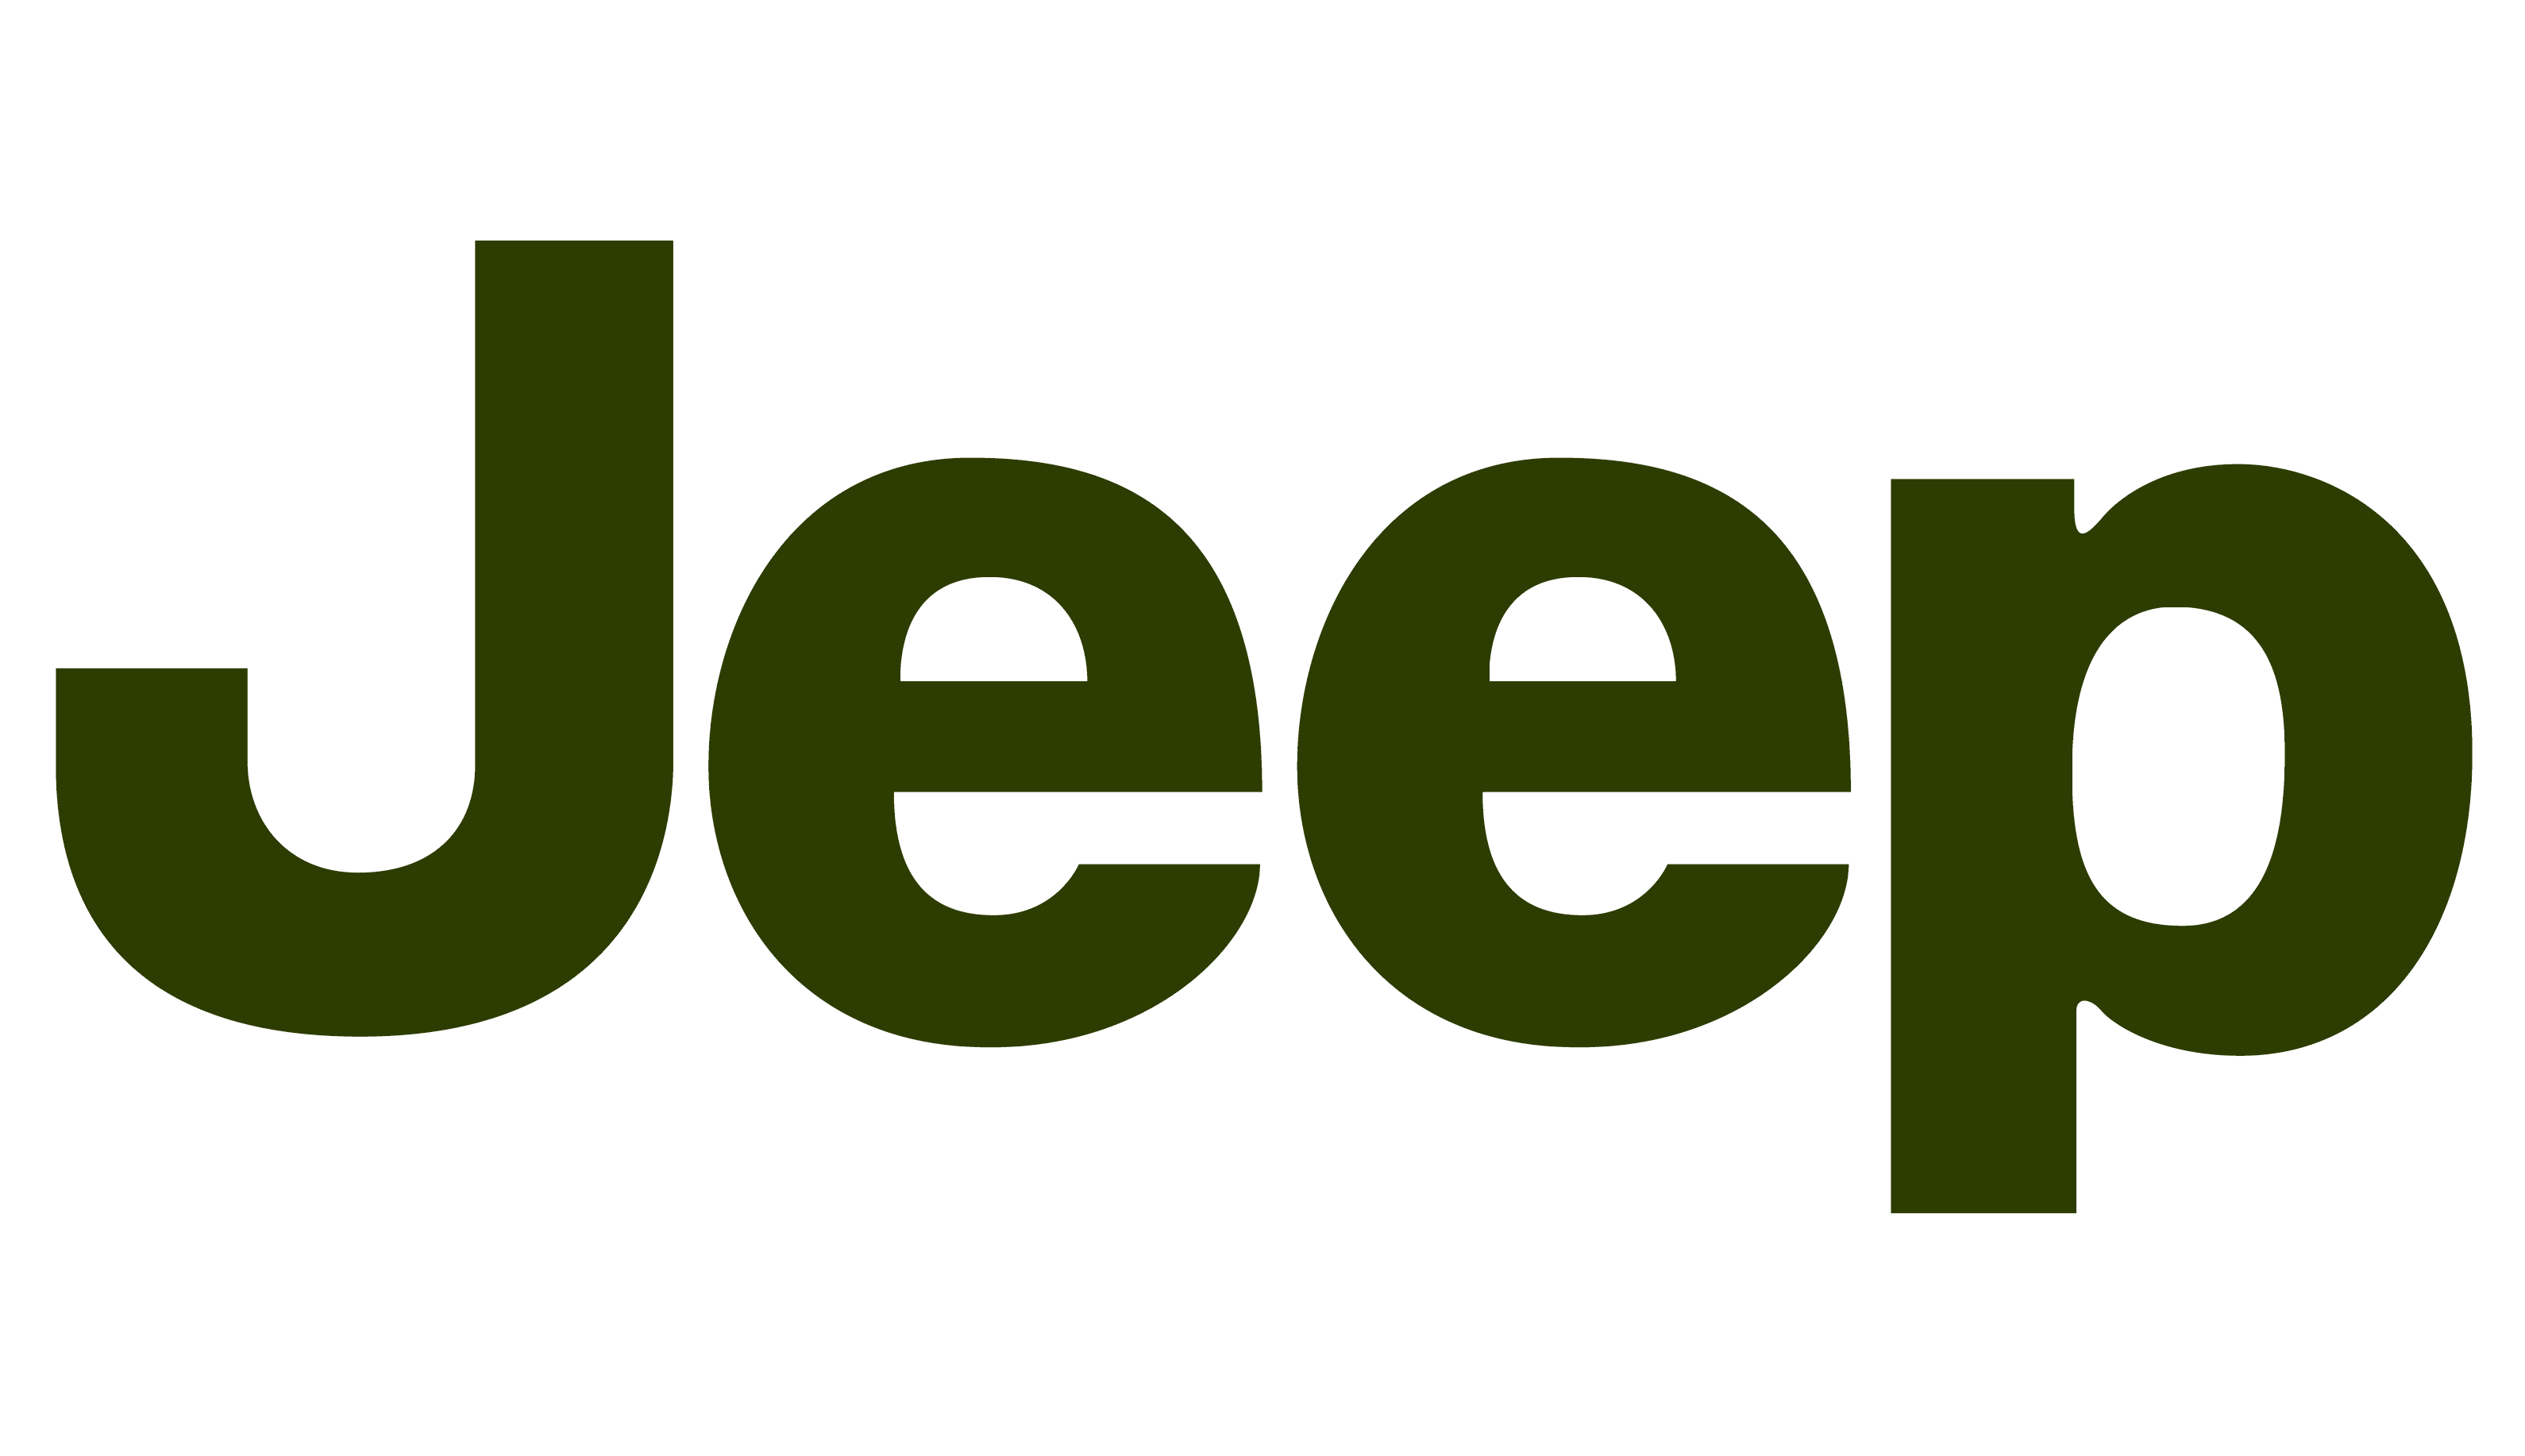 nissan certified jeep logo